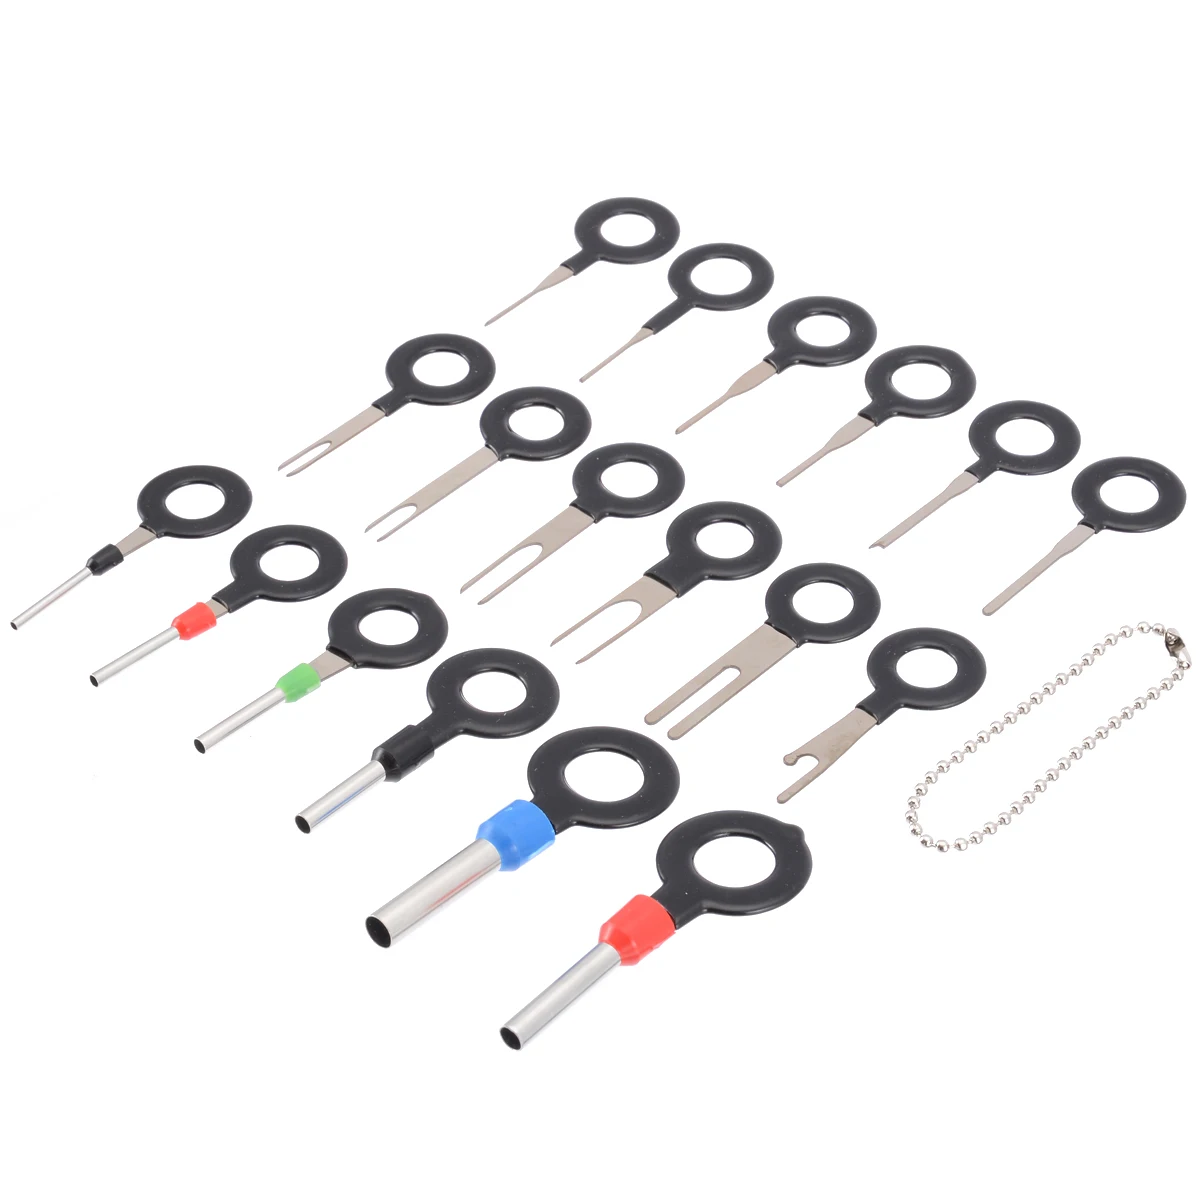 Details about   18pcs Automotive Plug Terminal Remove Tool Set Key Pin Car Electrical Wire Crimp 